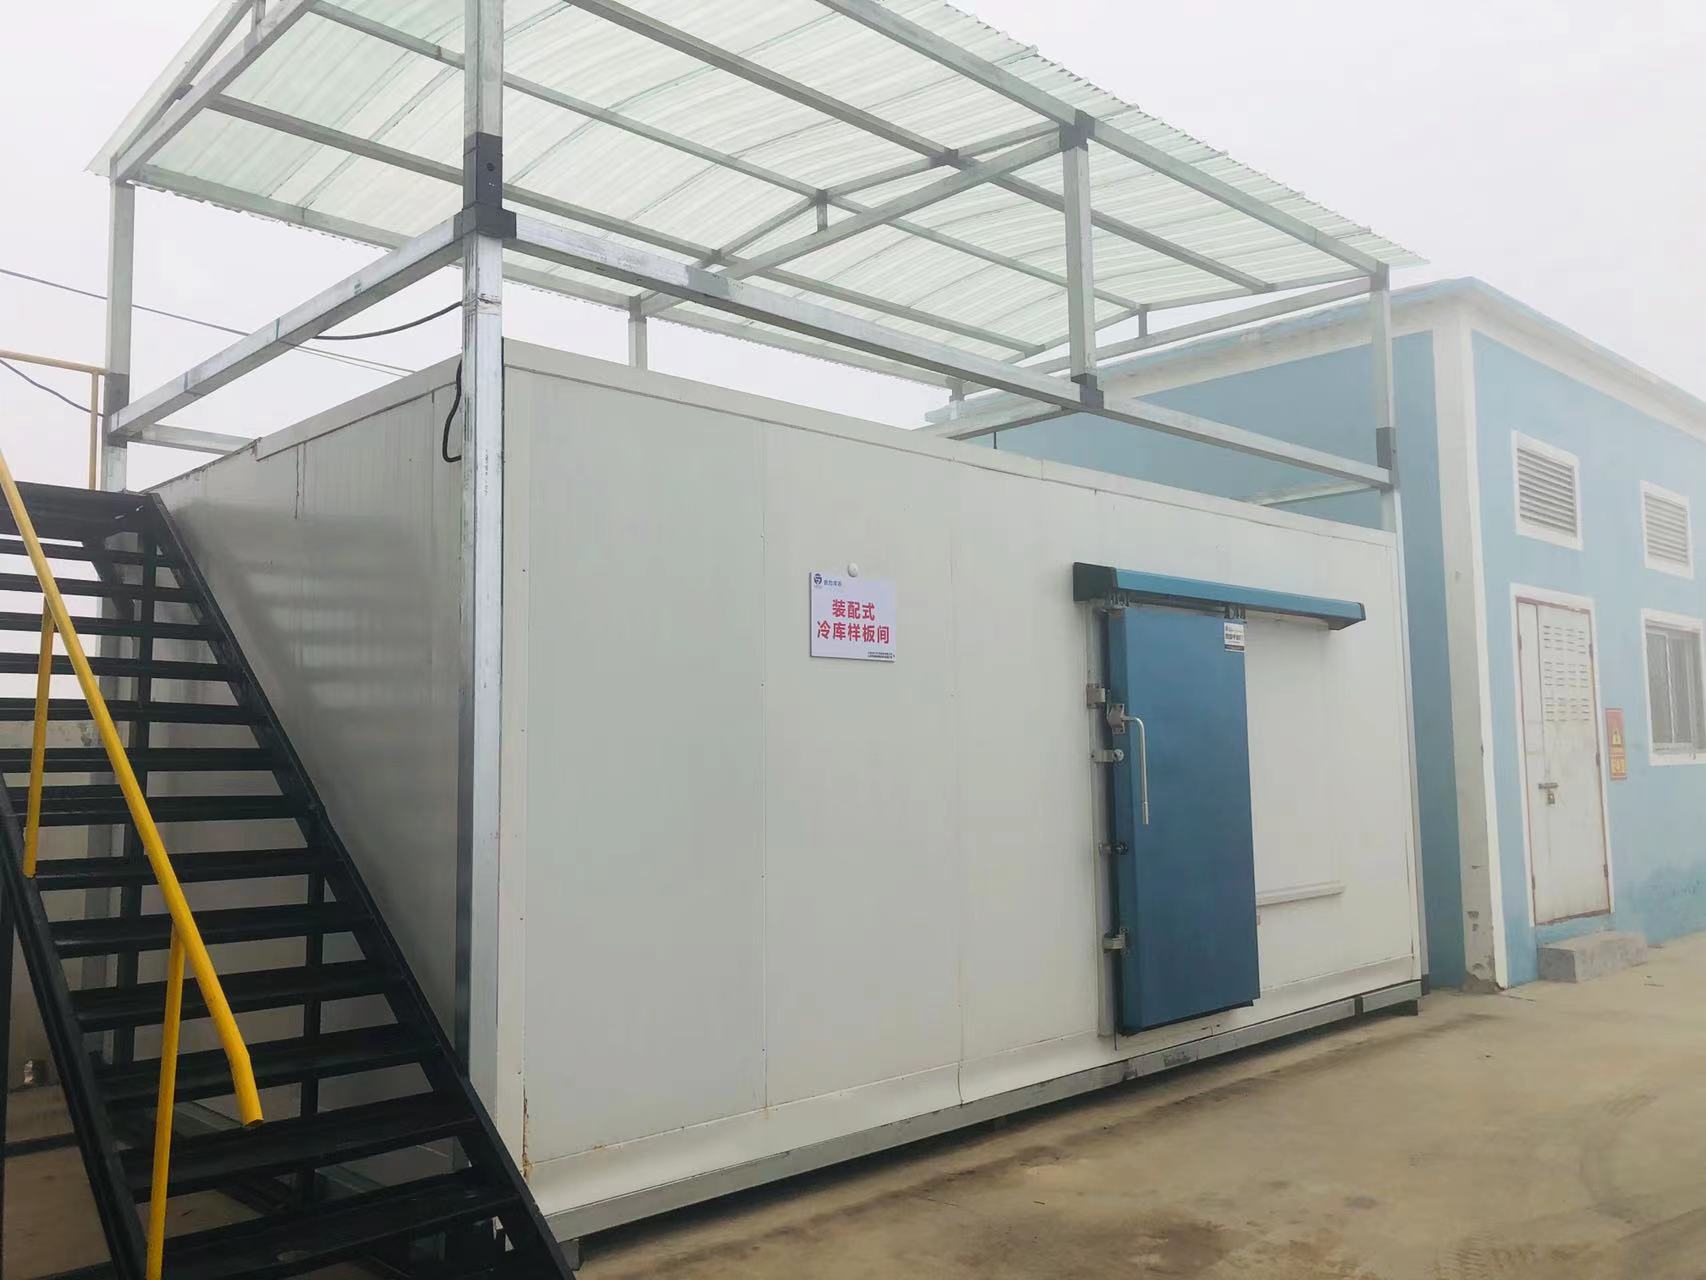 اولین اتاق خنک زنجیر سرد چین با واحد کمپرسور یخچال فرسکولد برای استرواژ مواد غذایی 